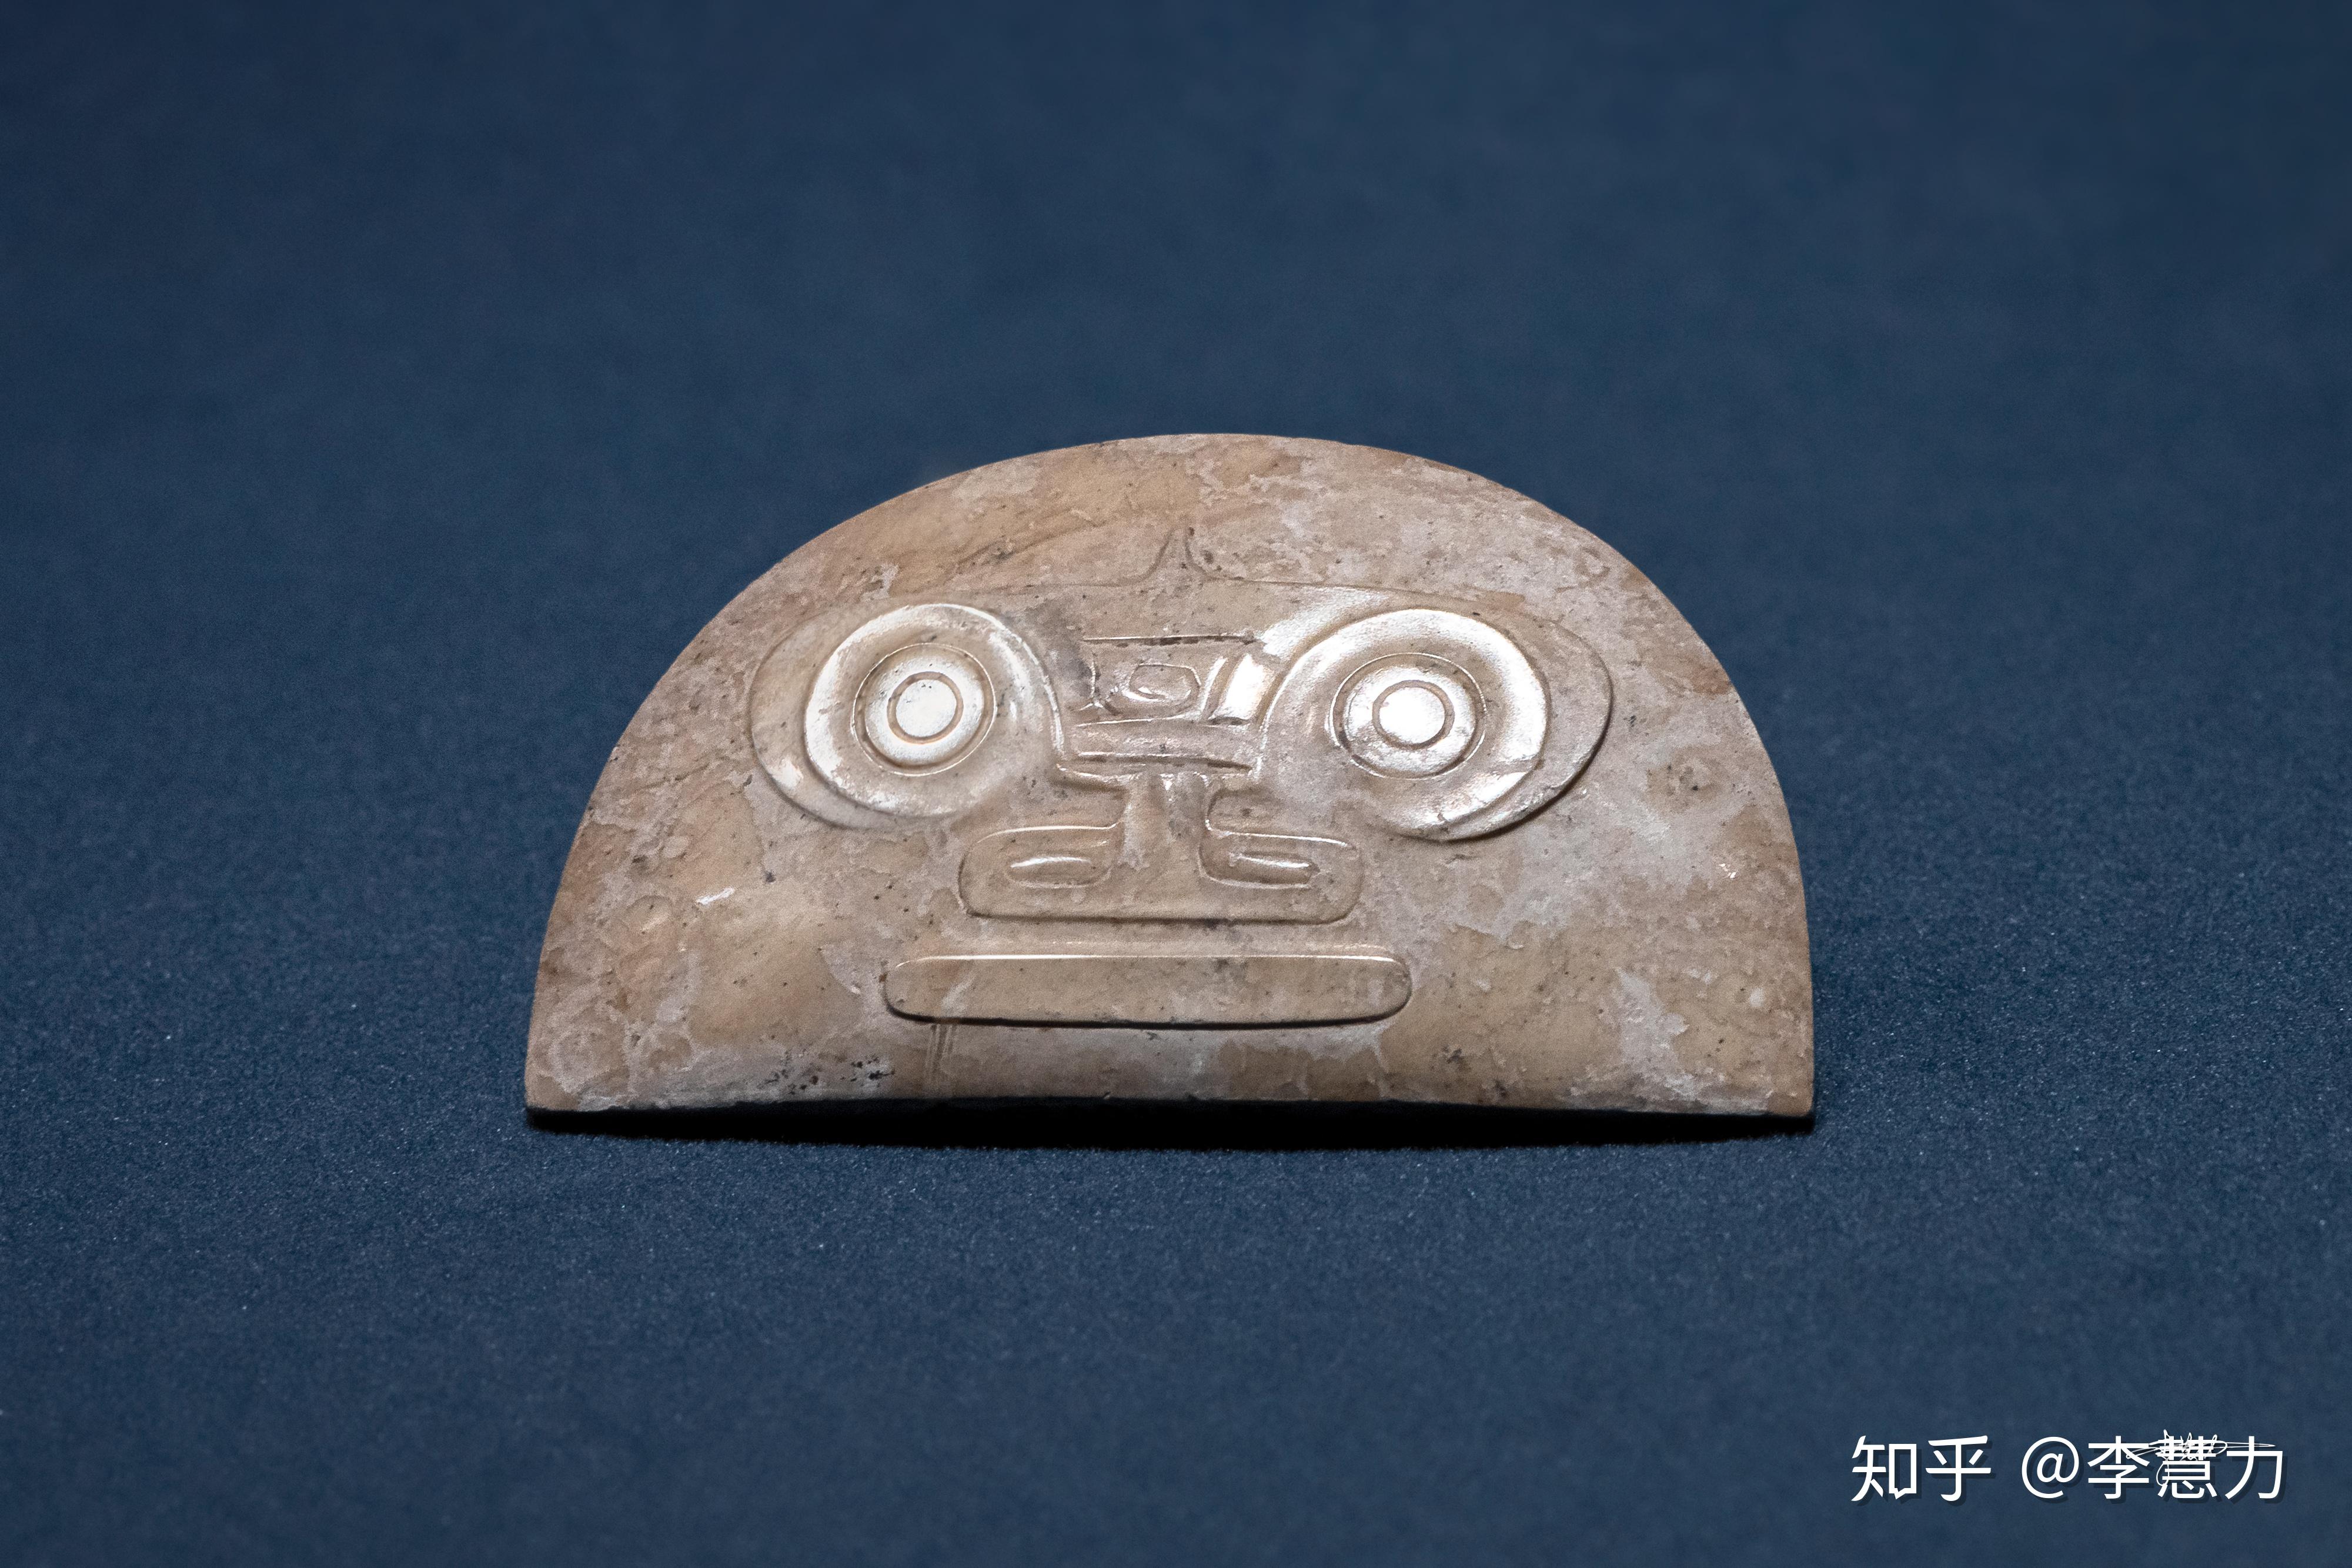 兽面纹玉半圆形器,浙江省博物馆,摄于2019年故宫博物院良渚玉器特展我